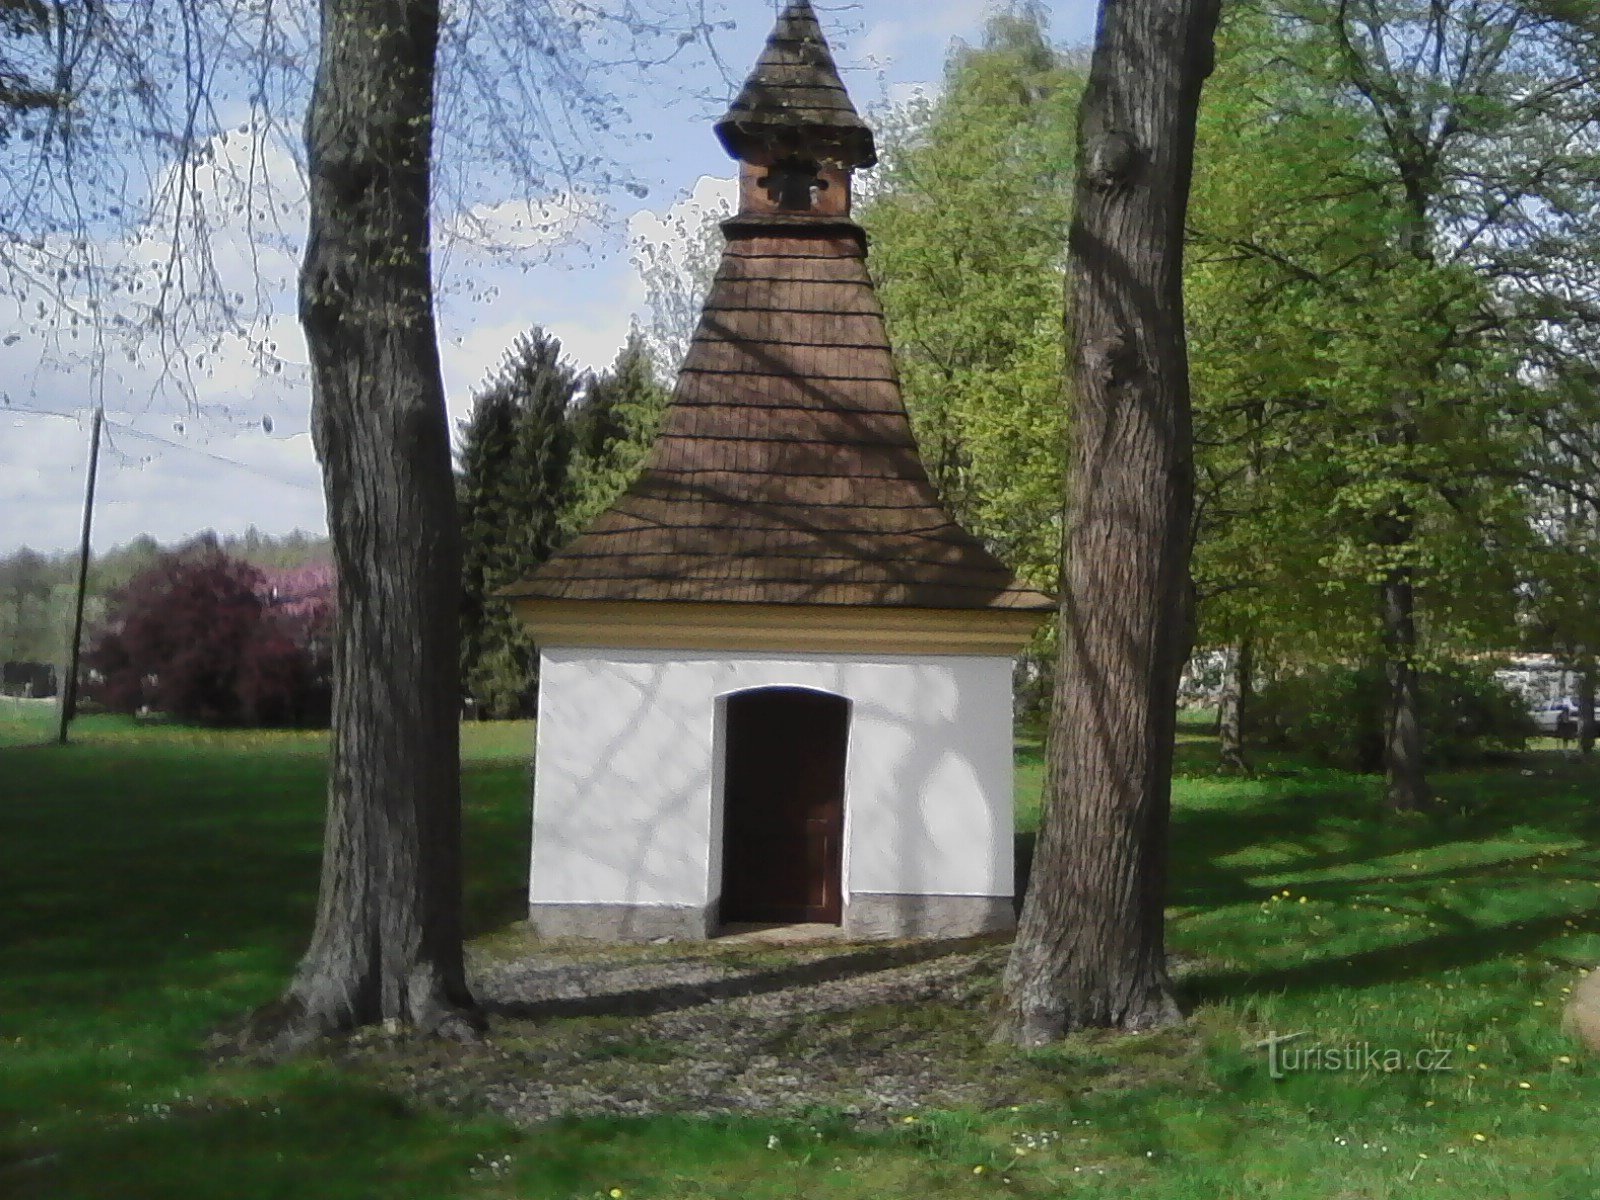 2. Гарно відремонтована каплиця св. Анни в Лесковицях. Перша письмова згадка про існування